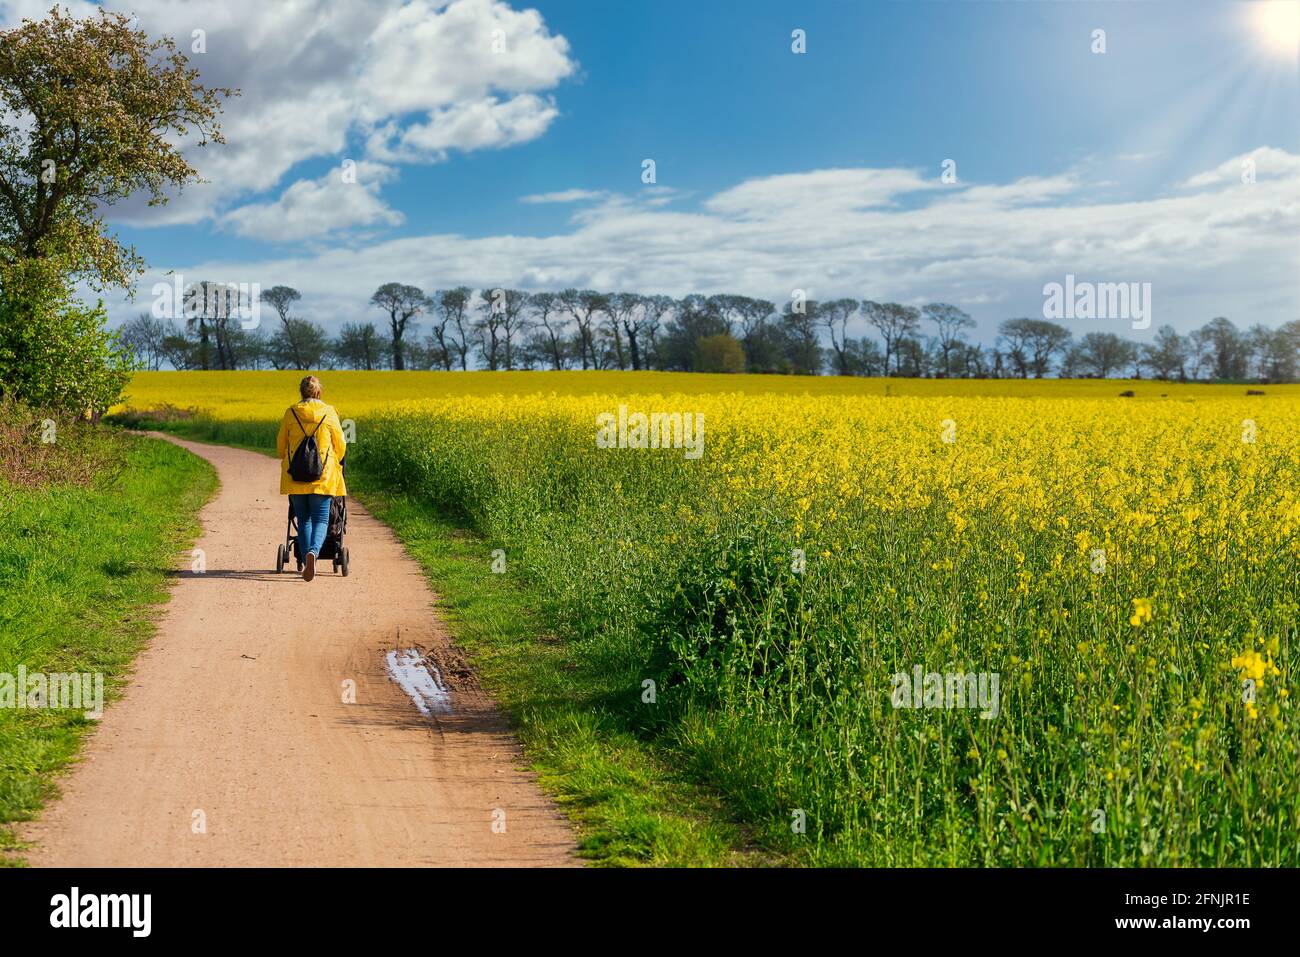 vue arrière d'une femme en imperméable jaune poussant un bébé descendez un chemin à côté d'un champ de canola Banque D'Images